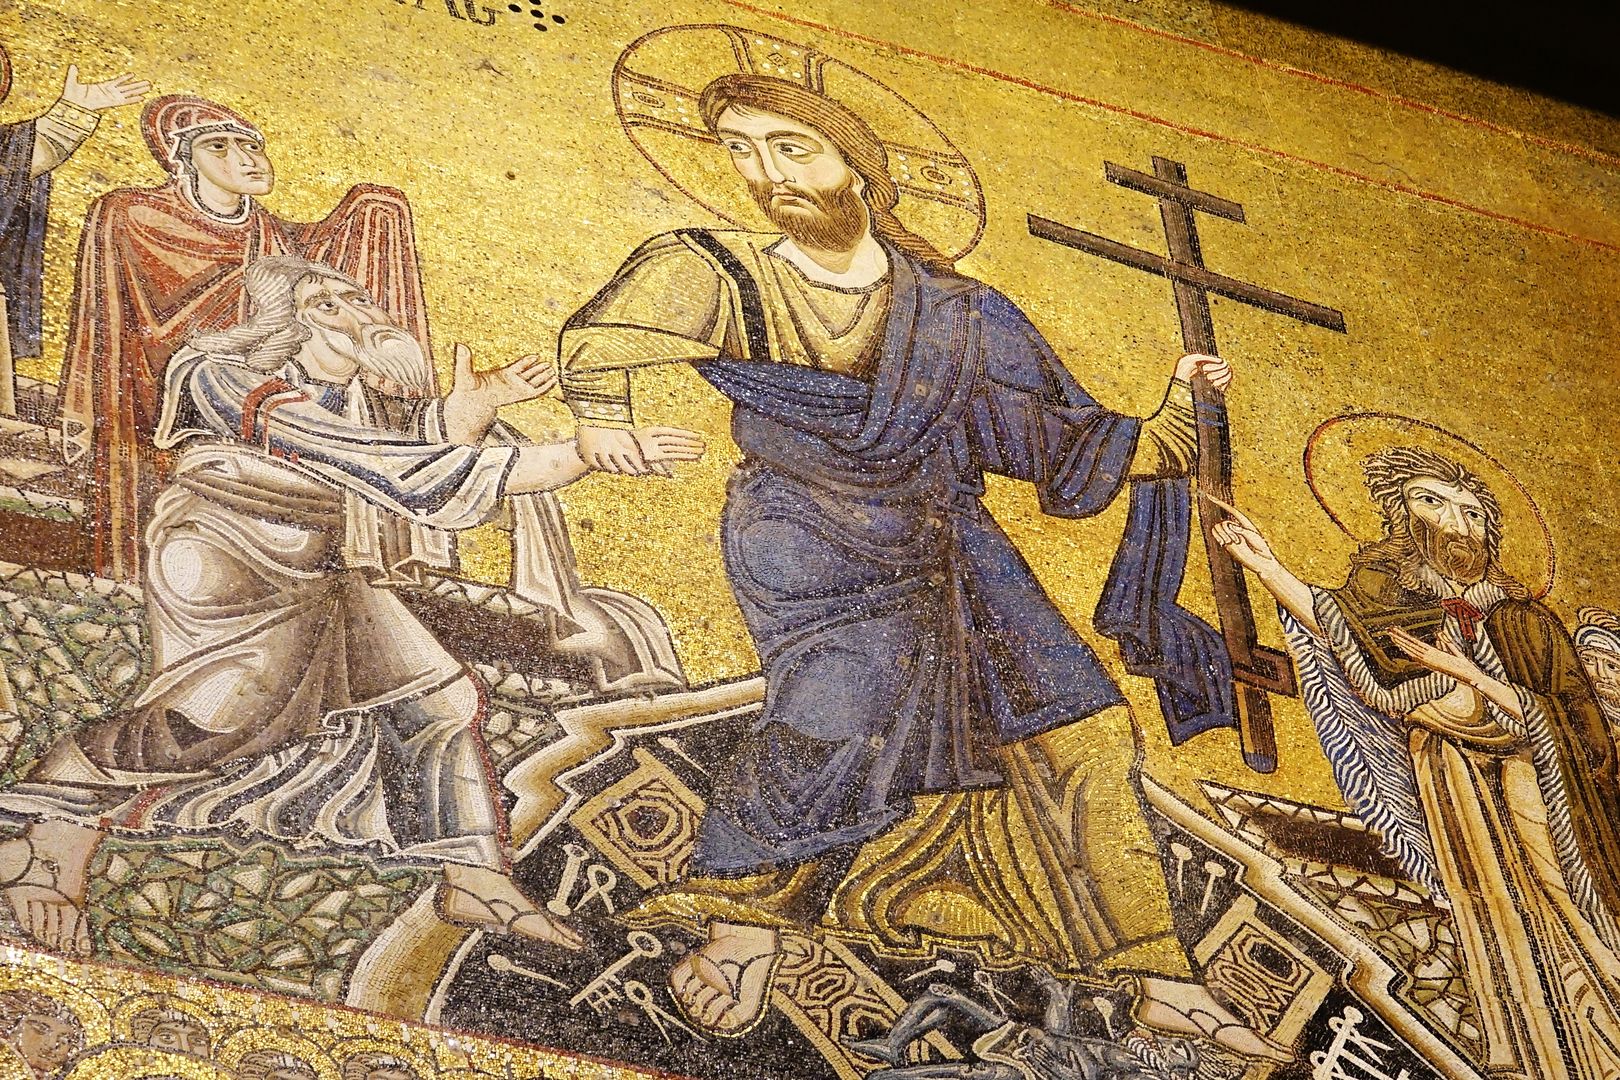 Torcello_Katedrála Santa Maria Assunta (639-1008)_mozaika Posledního soudu-západní stěna (3)